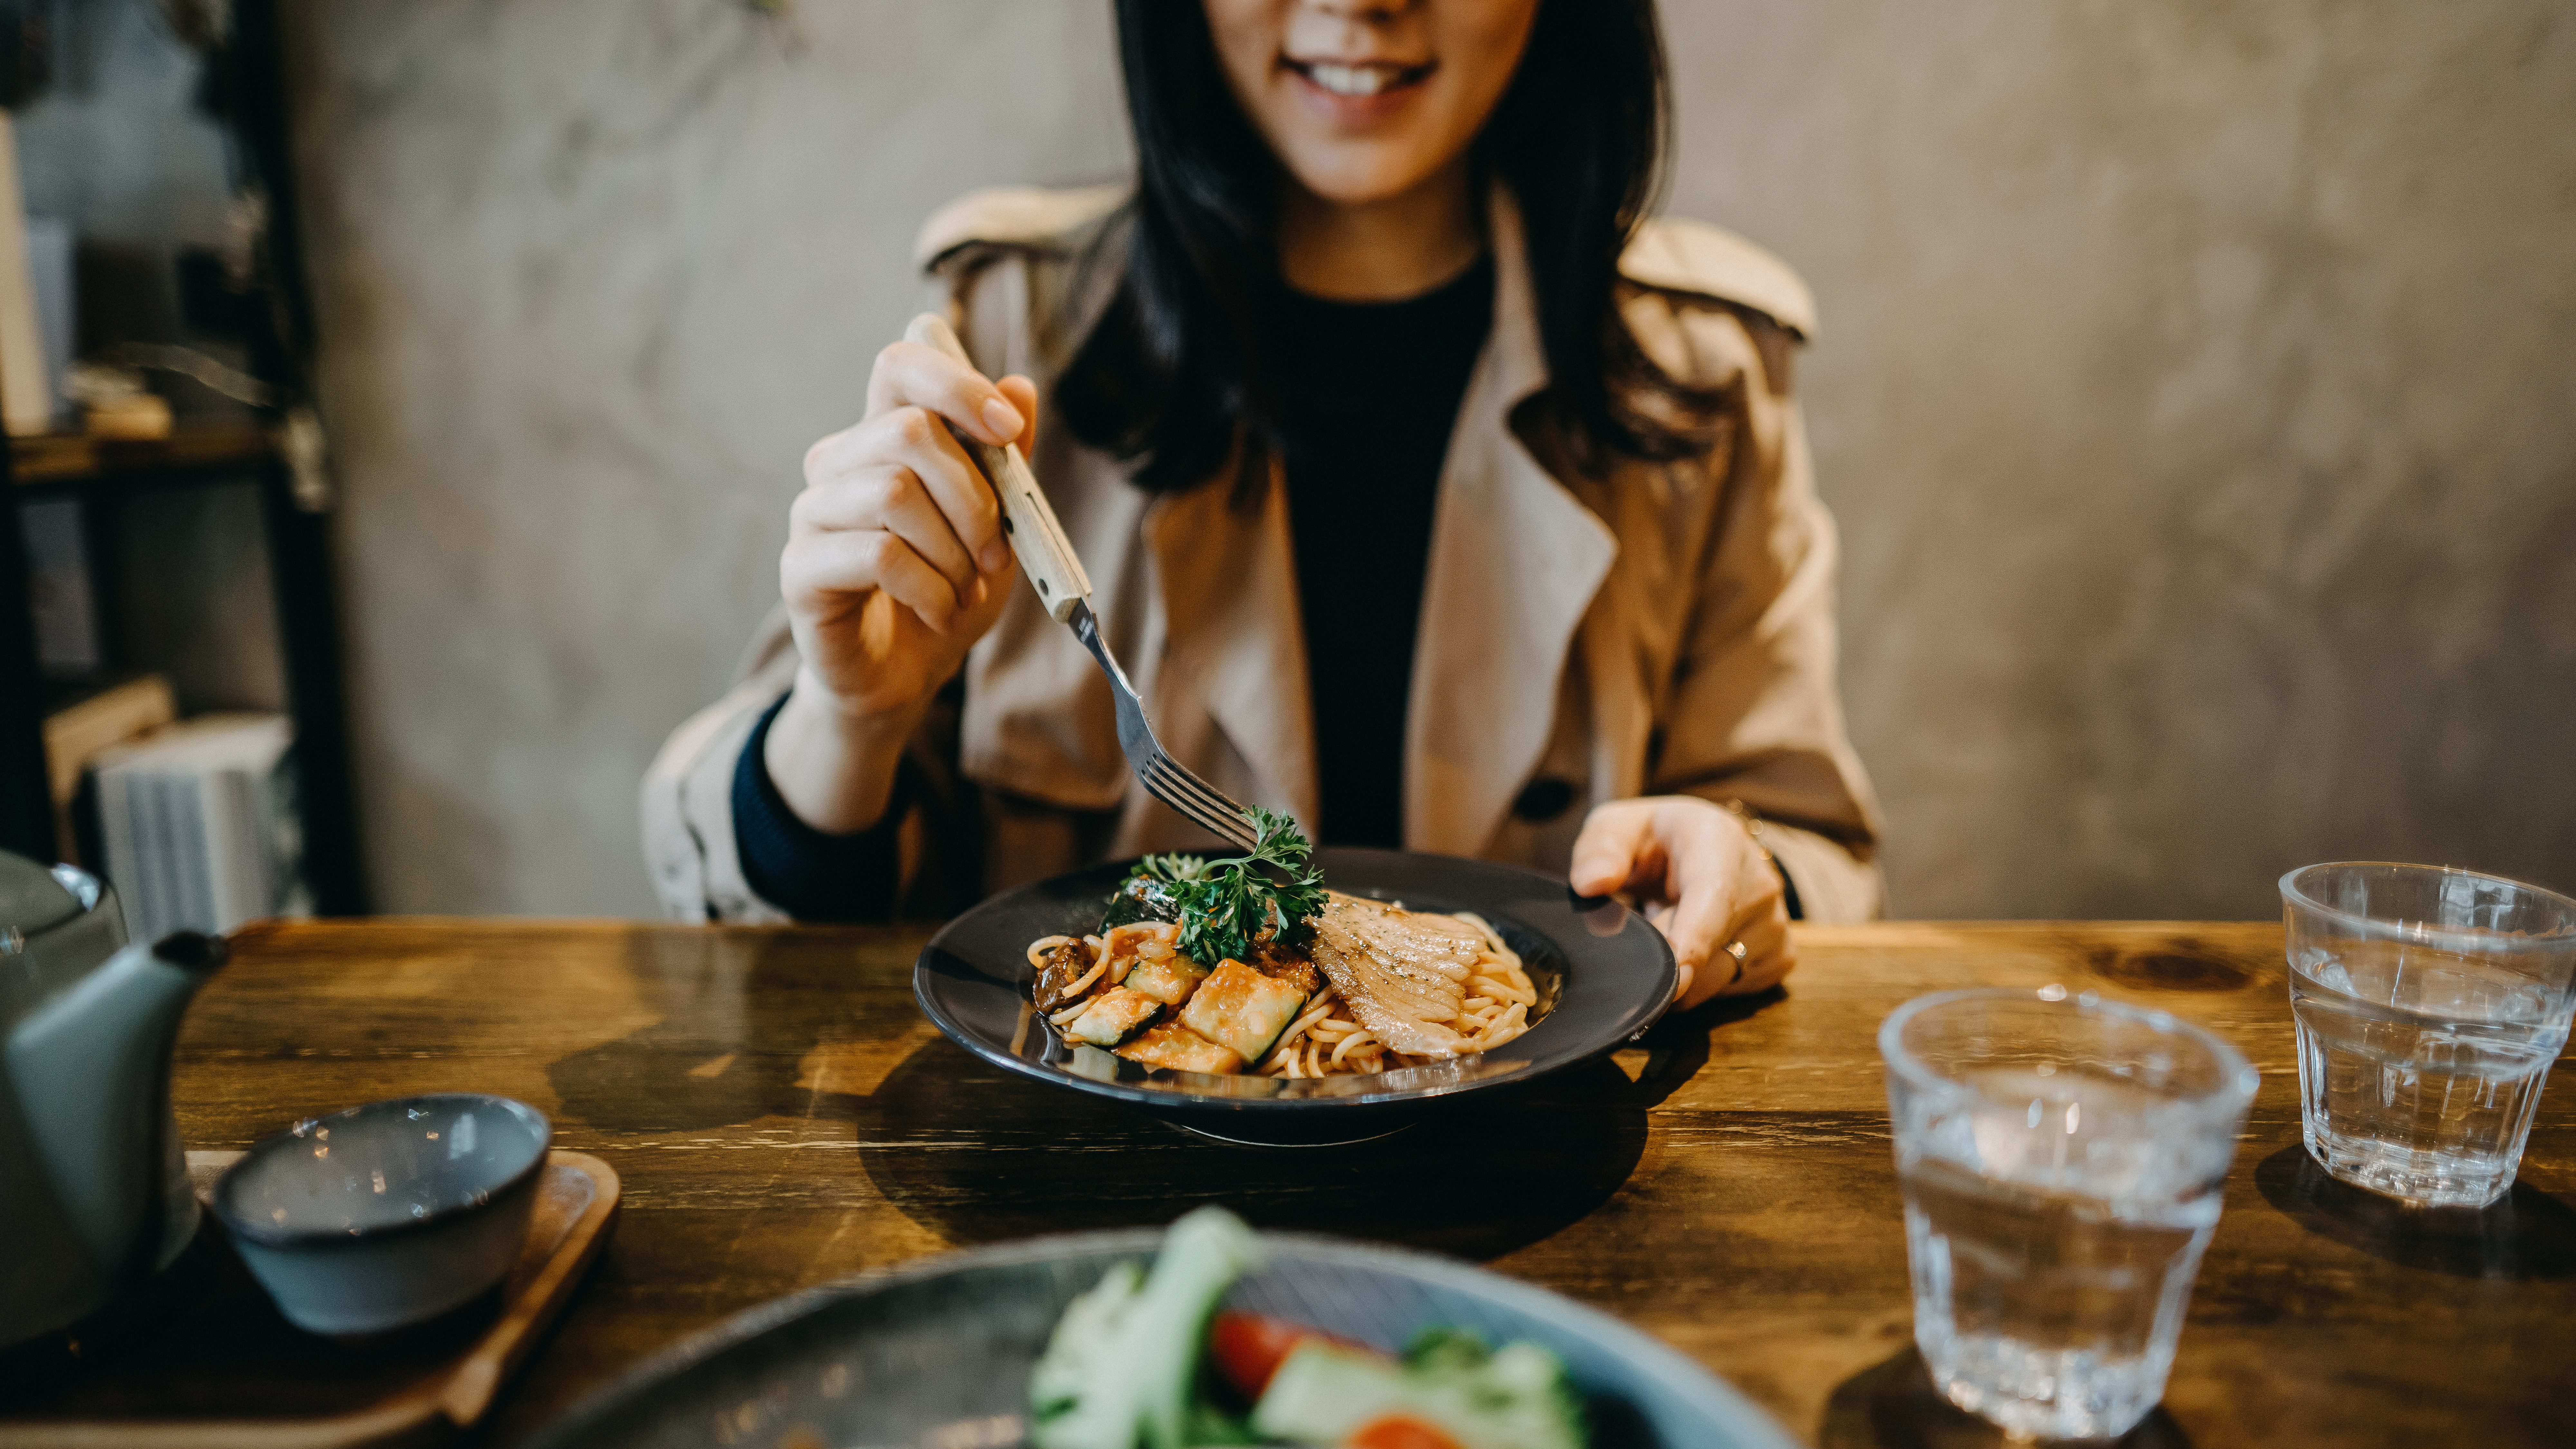 Eine lächelnde Frau beim Essen in einem Café | Quelle: Shutterstock